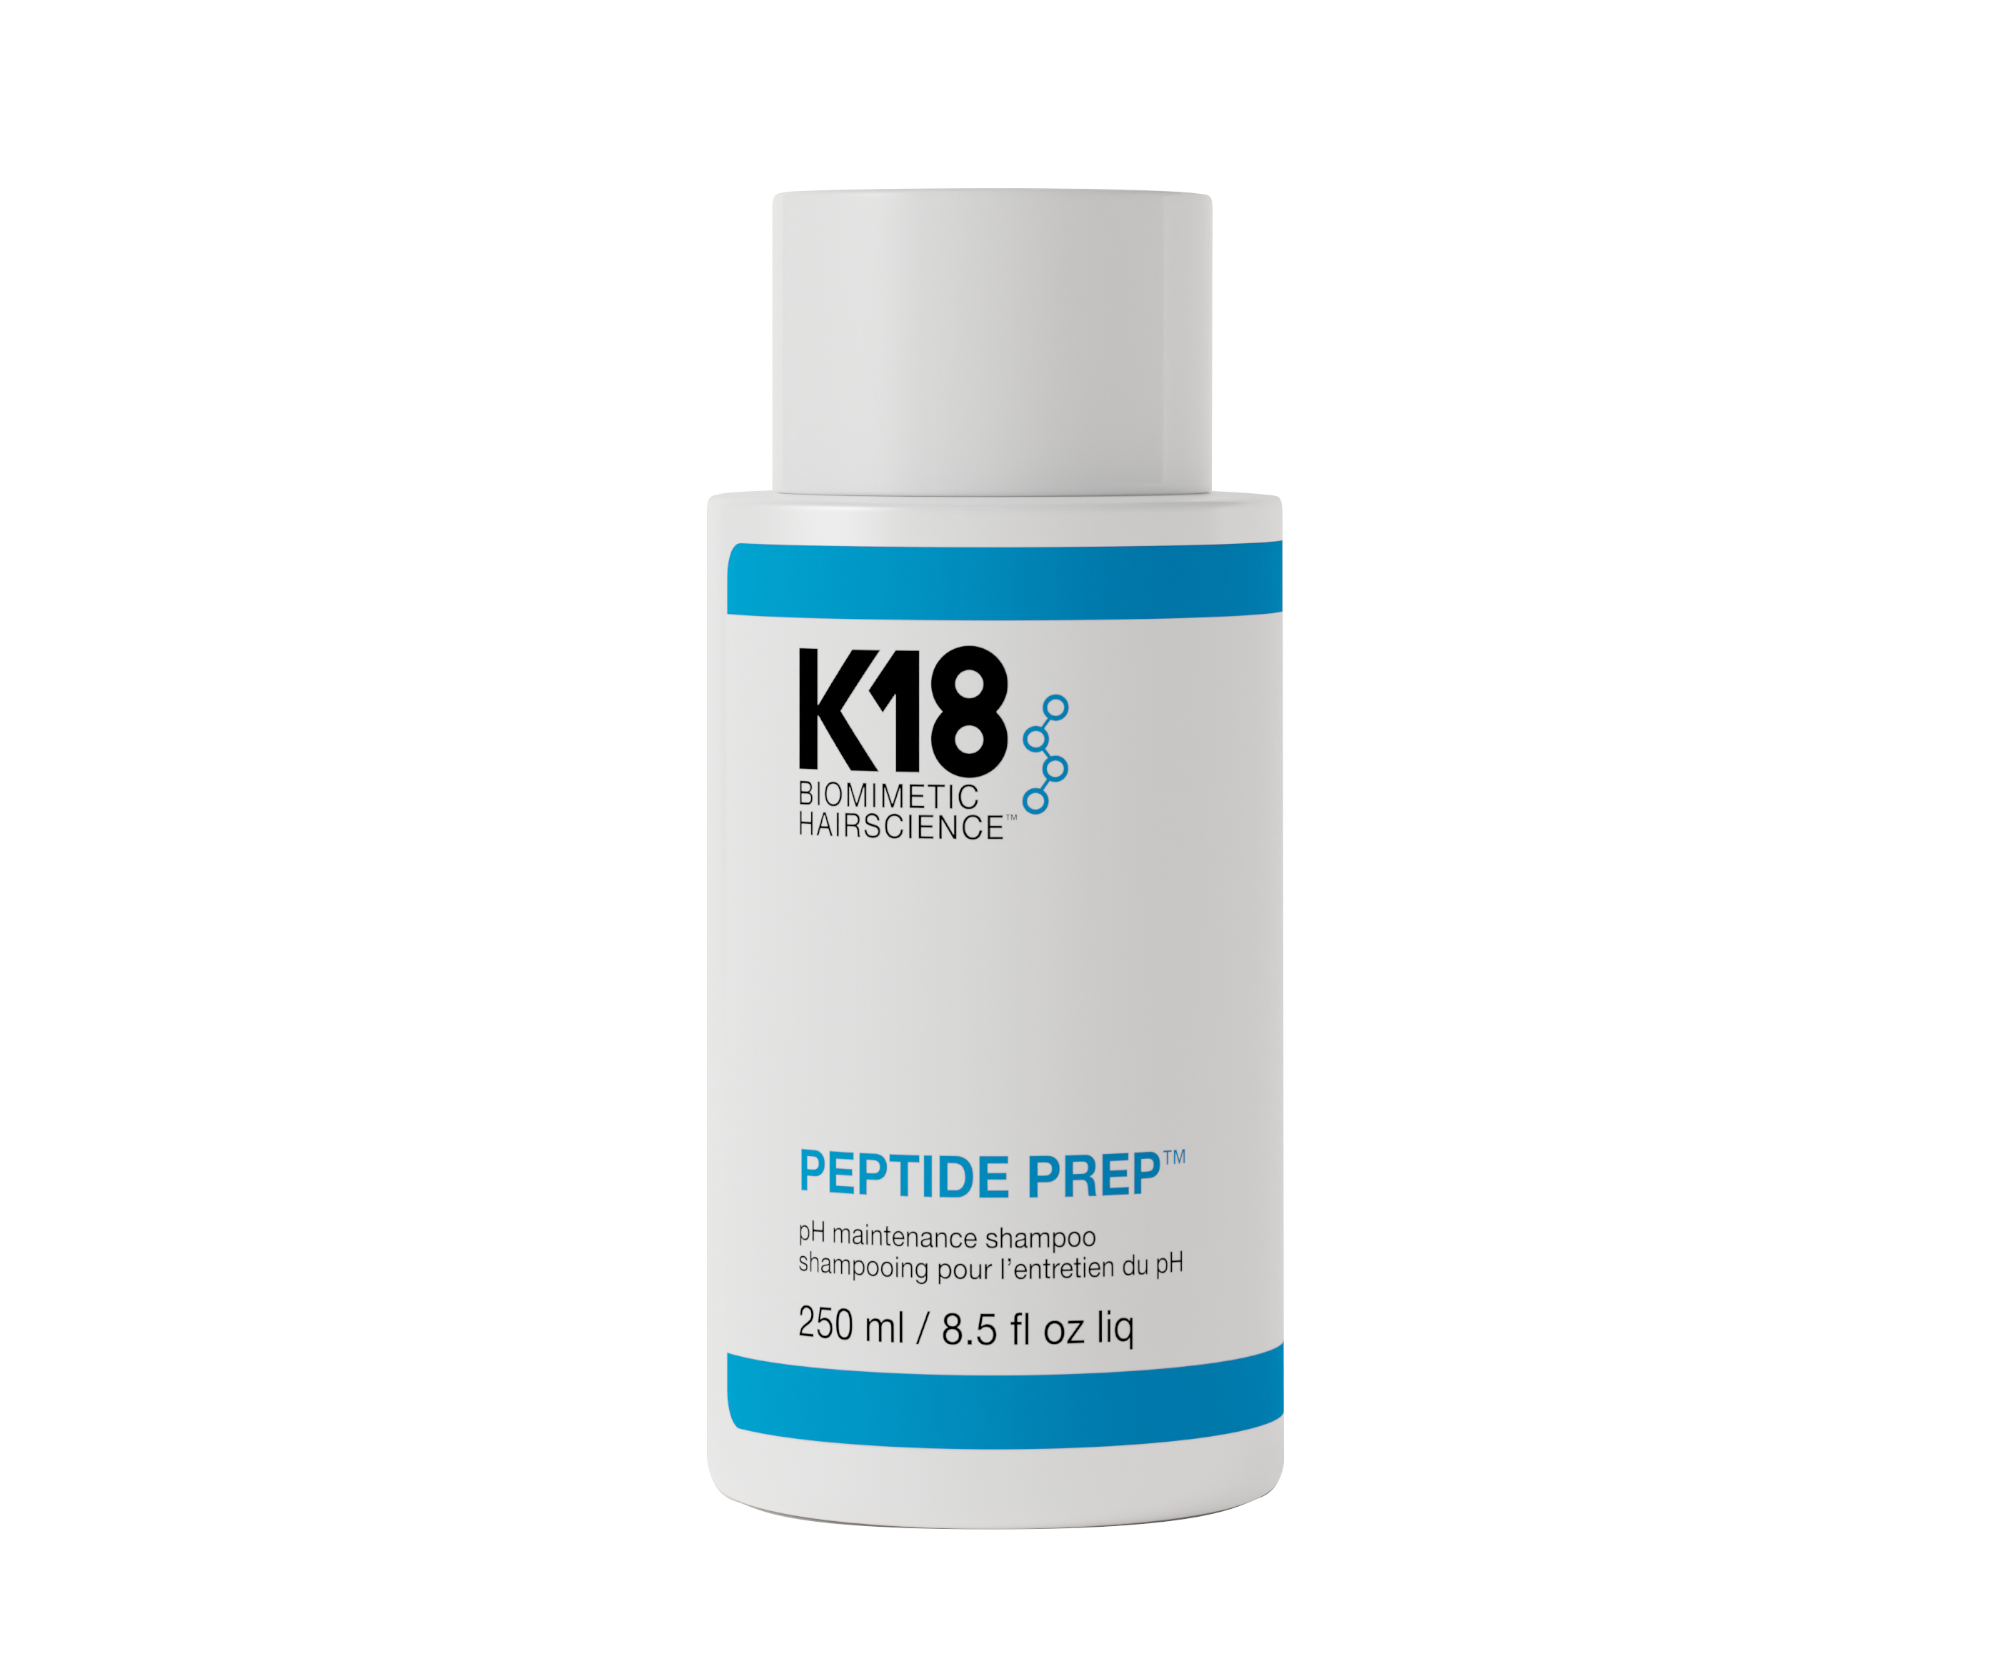 Čisticí šampon pro každodenní použití K18 Peptide Prep pH Maintenance Shampoo - 250 ml + dárek zdarma